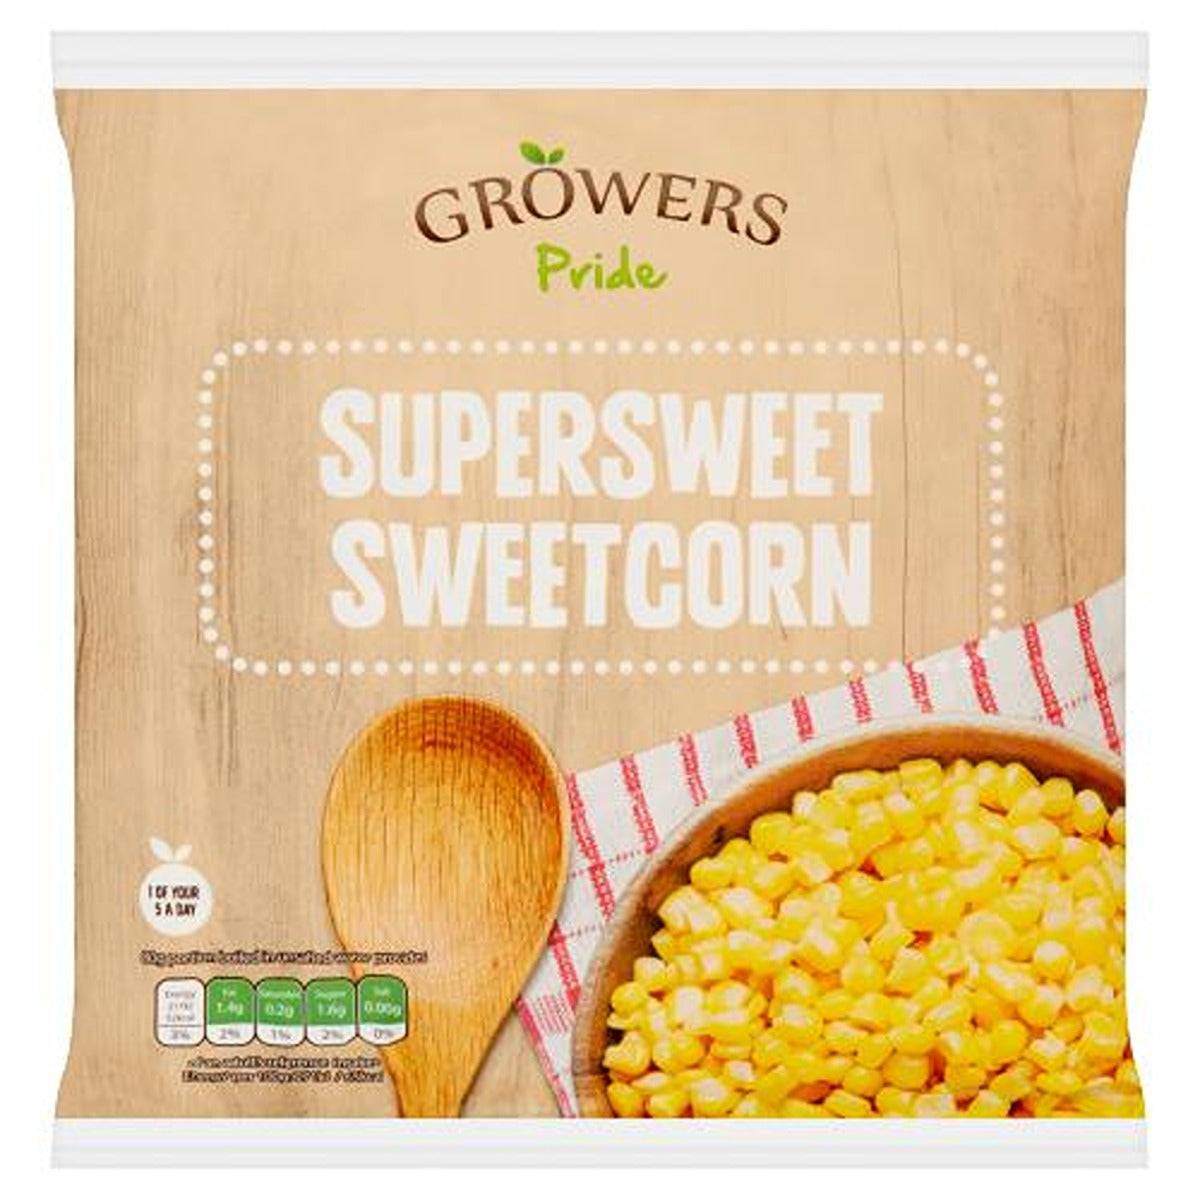 Growers Pride - Supersweet Sweetcorn - 450g - Continental Food Store